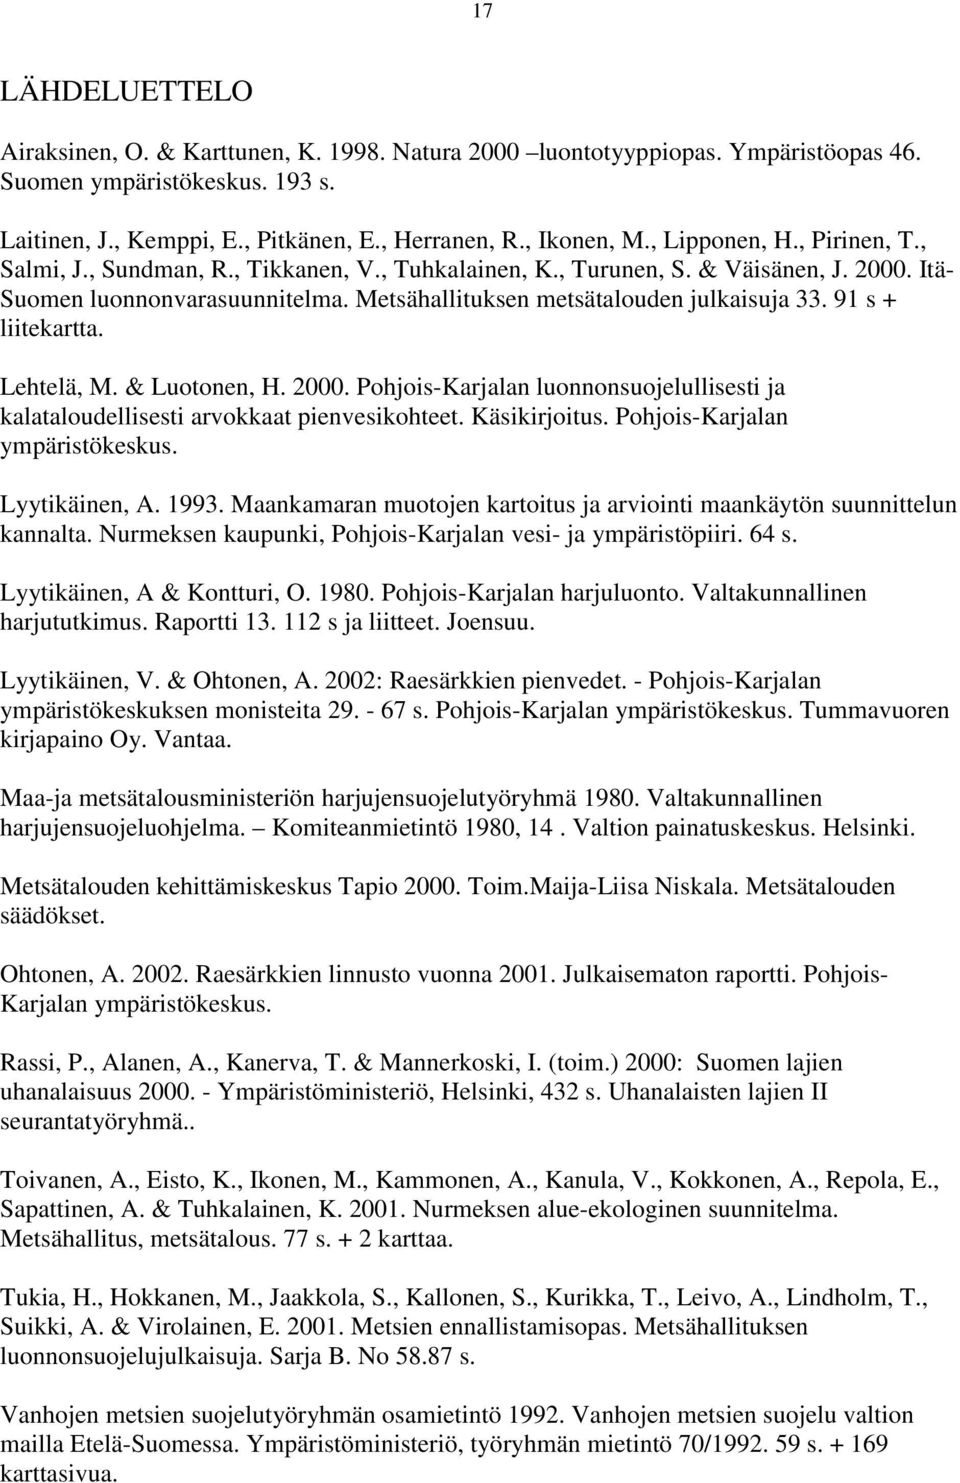 91 s + liitekartta. Lehtelä, M. & Luotonen, H. 2000. Pohjois-Karjalan luonnonsuojelullisesti ja kalataloudellisesti arvokkaat pienvesikohteet. Käsikirjoitus. Pohjois-Karjalan ympäristökeskus.